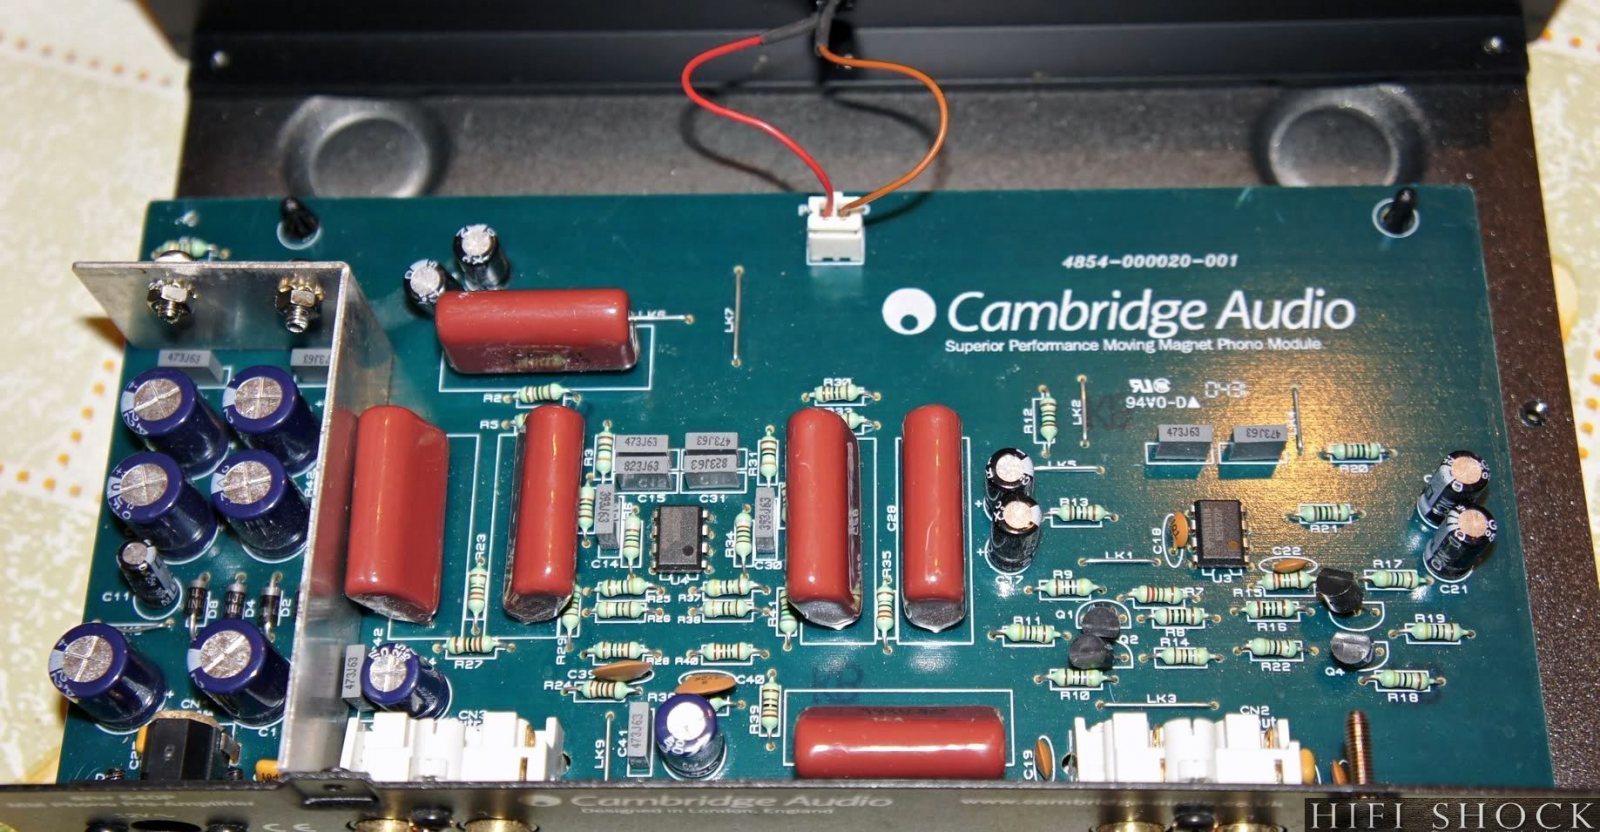 azur-540p-1b-cambridge-audio.jpg